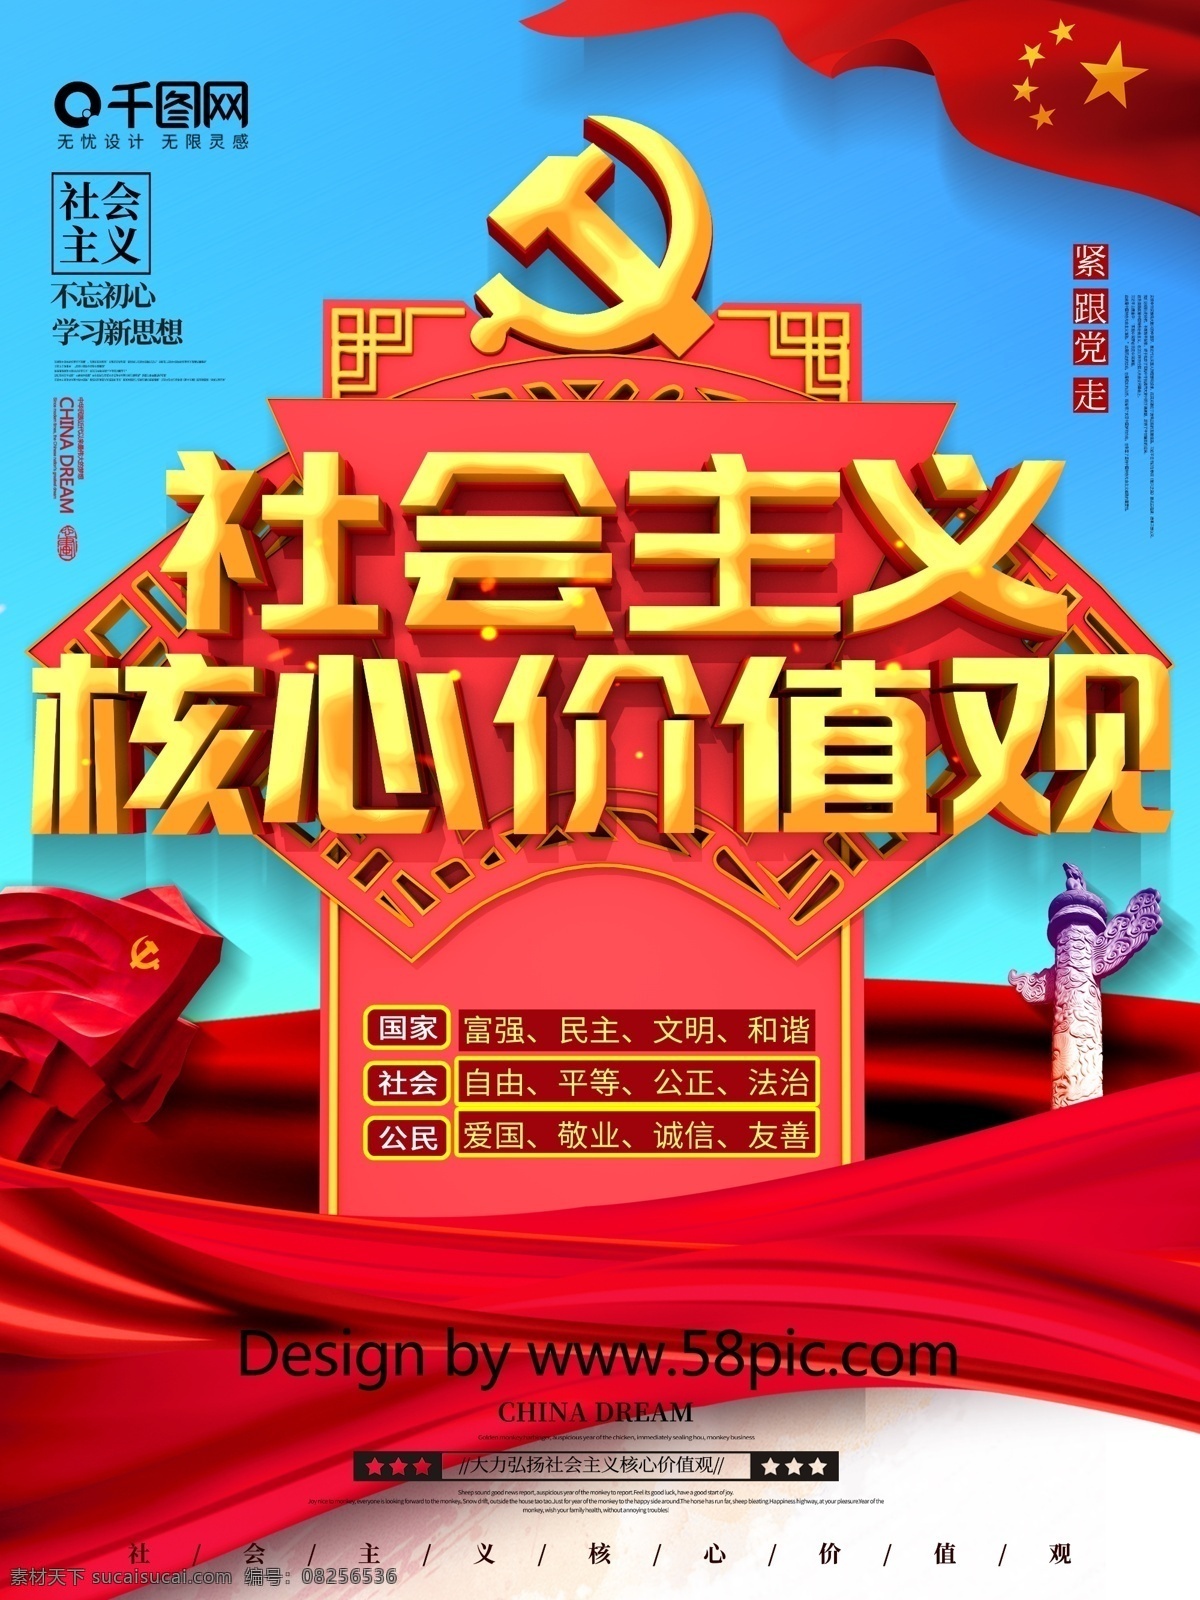 创意 c4d 社会主义 核心 价值观 党建 宣传海报 核心价值观 核心价值海报 党建文化 中国特色 新时代 新思想 不忘初心